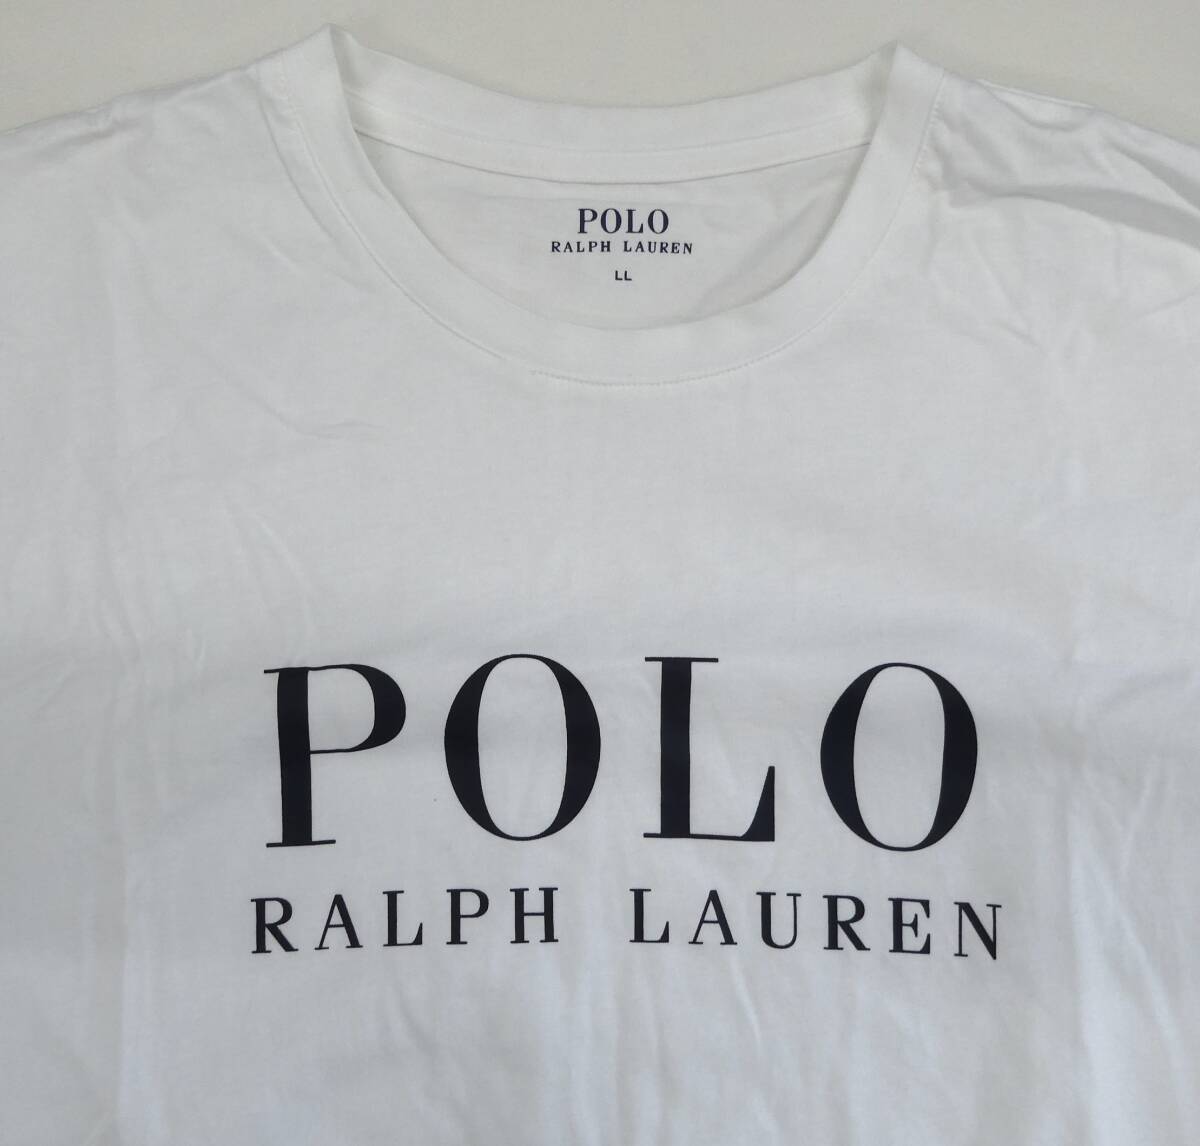 POLO RALPH LAUREN ◆ ポロ ラルフローレン ◆ 半袖Tシャツ ◆ フロントロゴ ◆ 半袖カットソー コットン Tシャツ カットソー ホワイト/LL_画像3